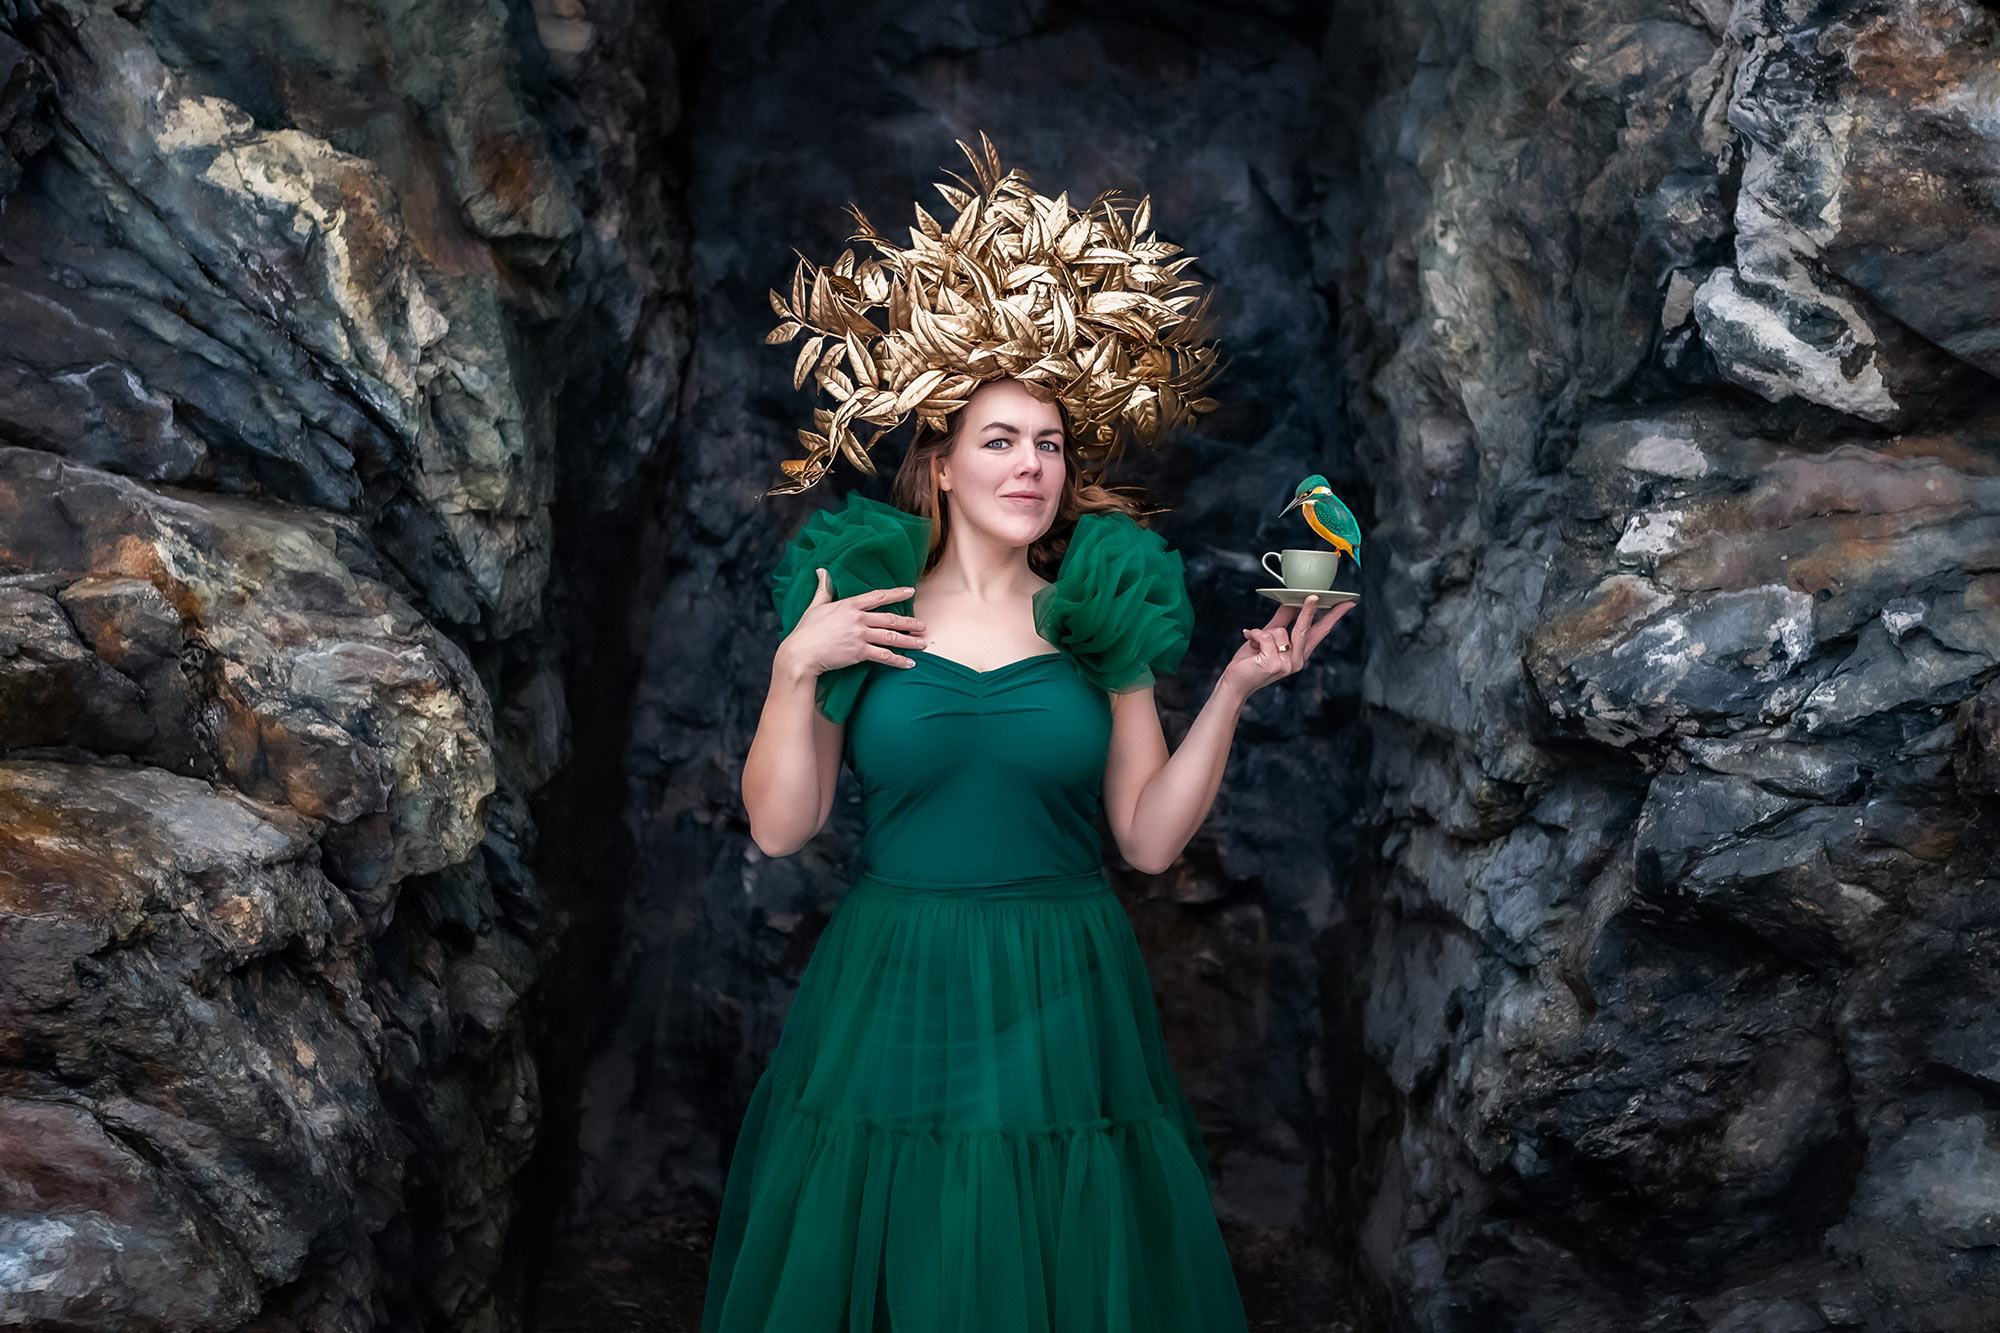 En vacker kvinna i grön tyllklänning och guldkrona står mellan klippor och håller i en liten grön tekopp. På tekoppen sitter en grön-orange fågel.